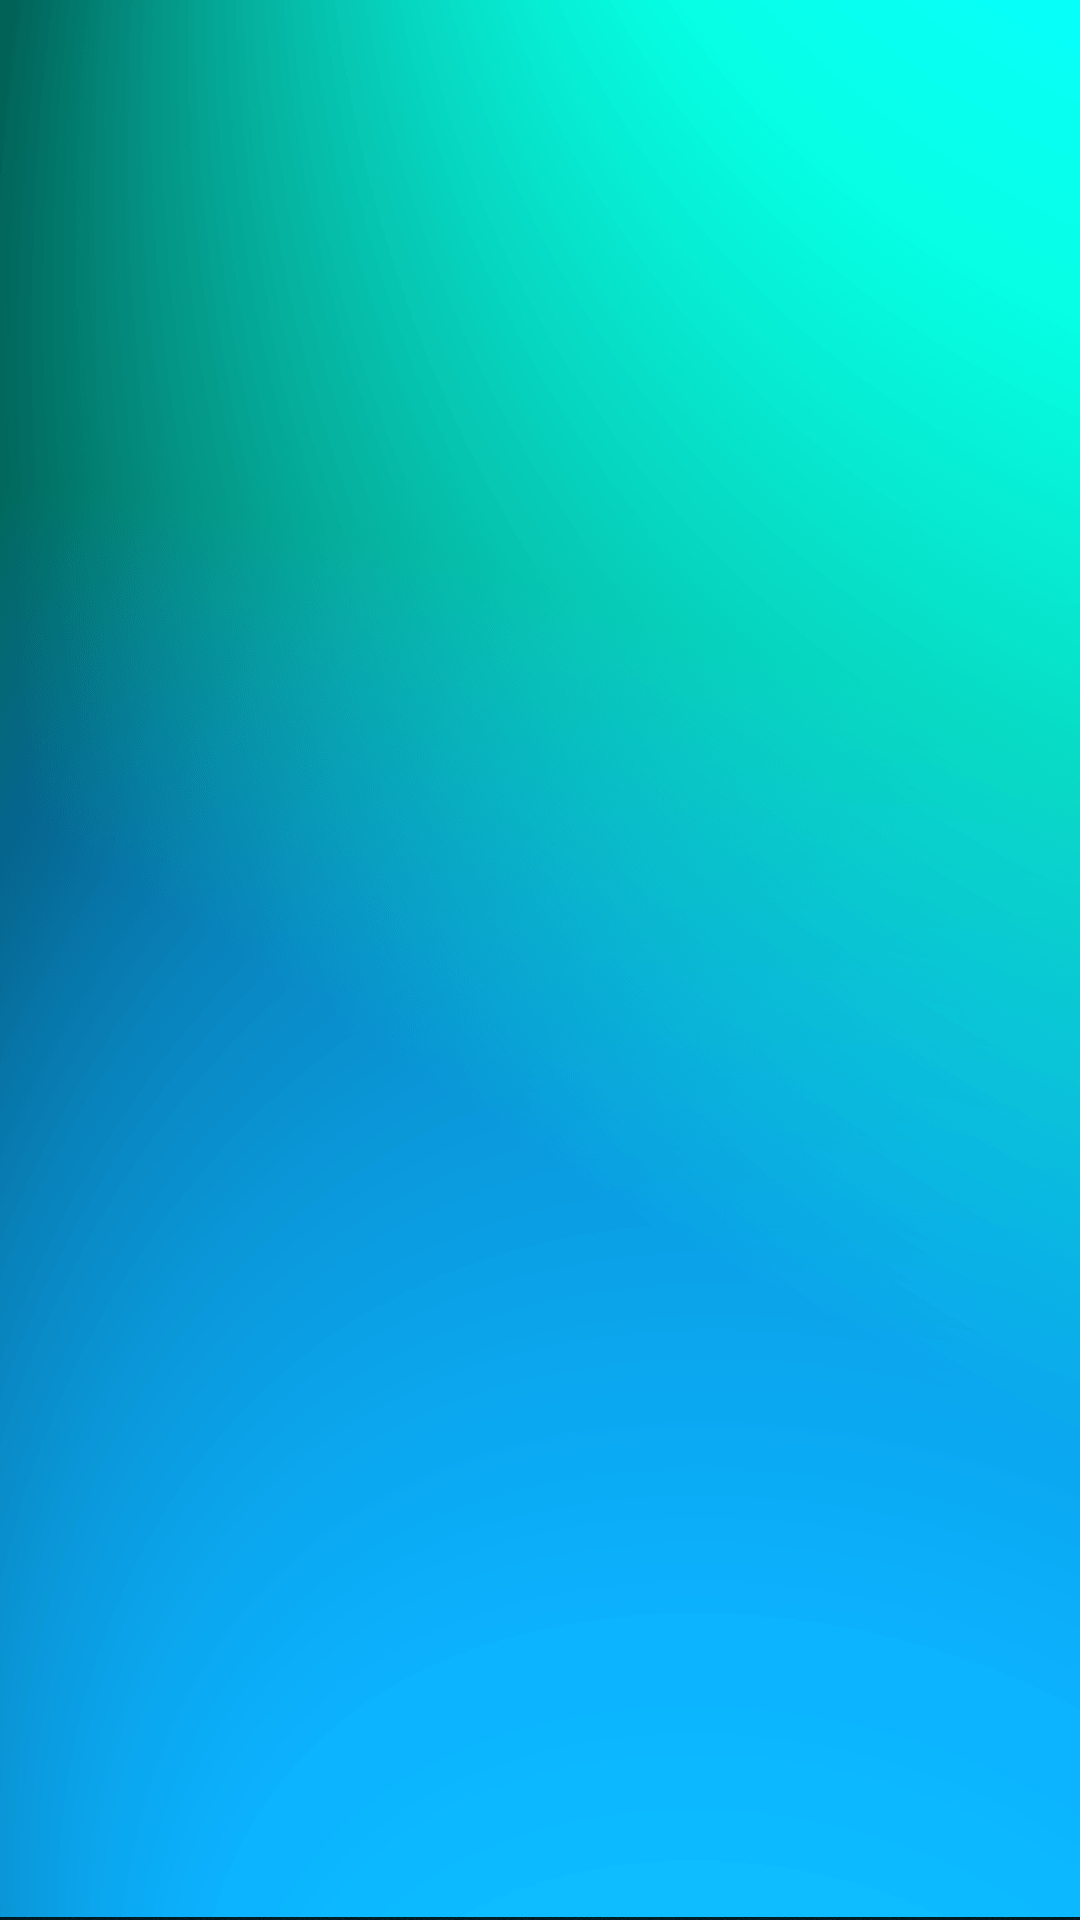 1080x1920 Green blue htc one hình nền - Hình nền htc one đẹp nhất